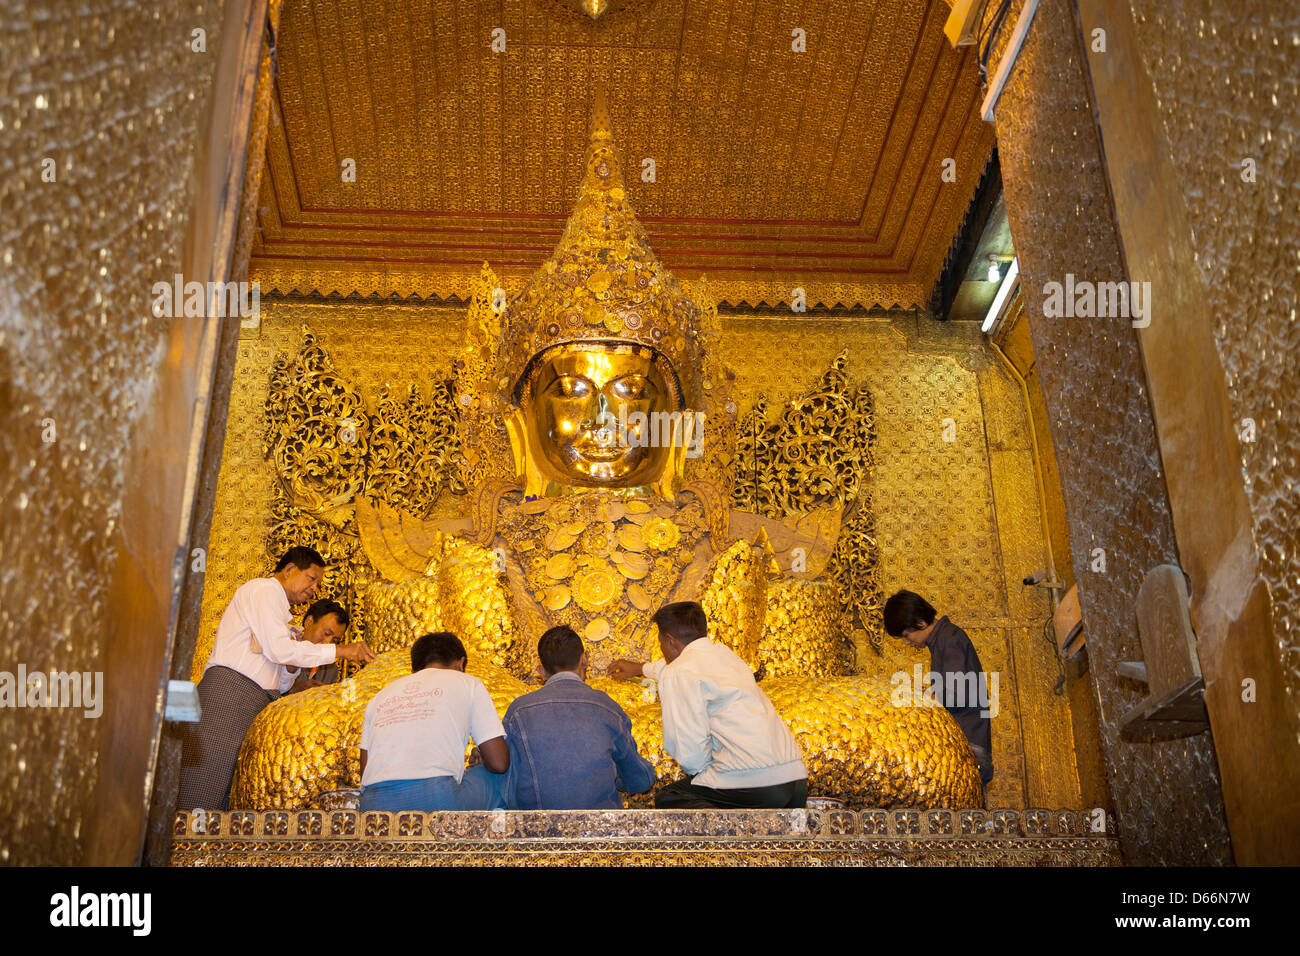 Gläubige, die Anwendung von Blattgold auf Mahamuni Buddha, Mahamuni Pagode, Mandalay, Myanmar (Burma) Stockfoto